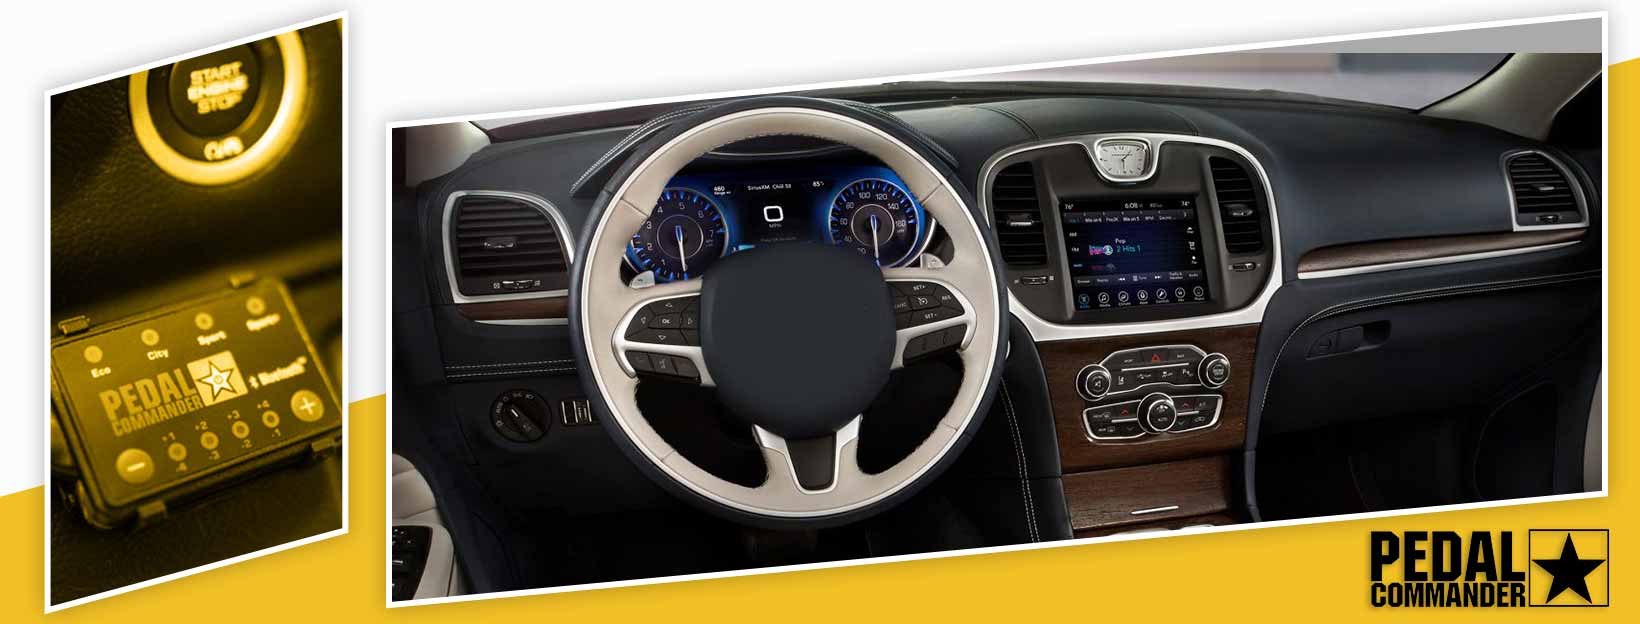 Pedal Commander for Chrysler 300 - interior